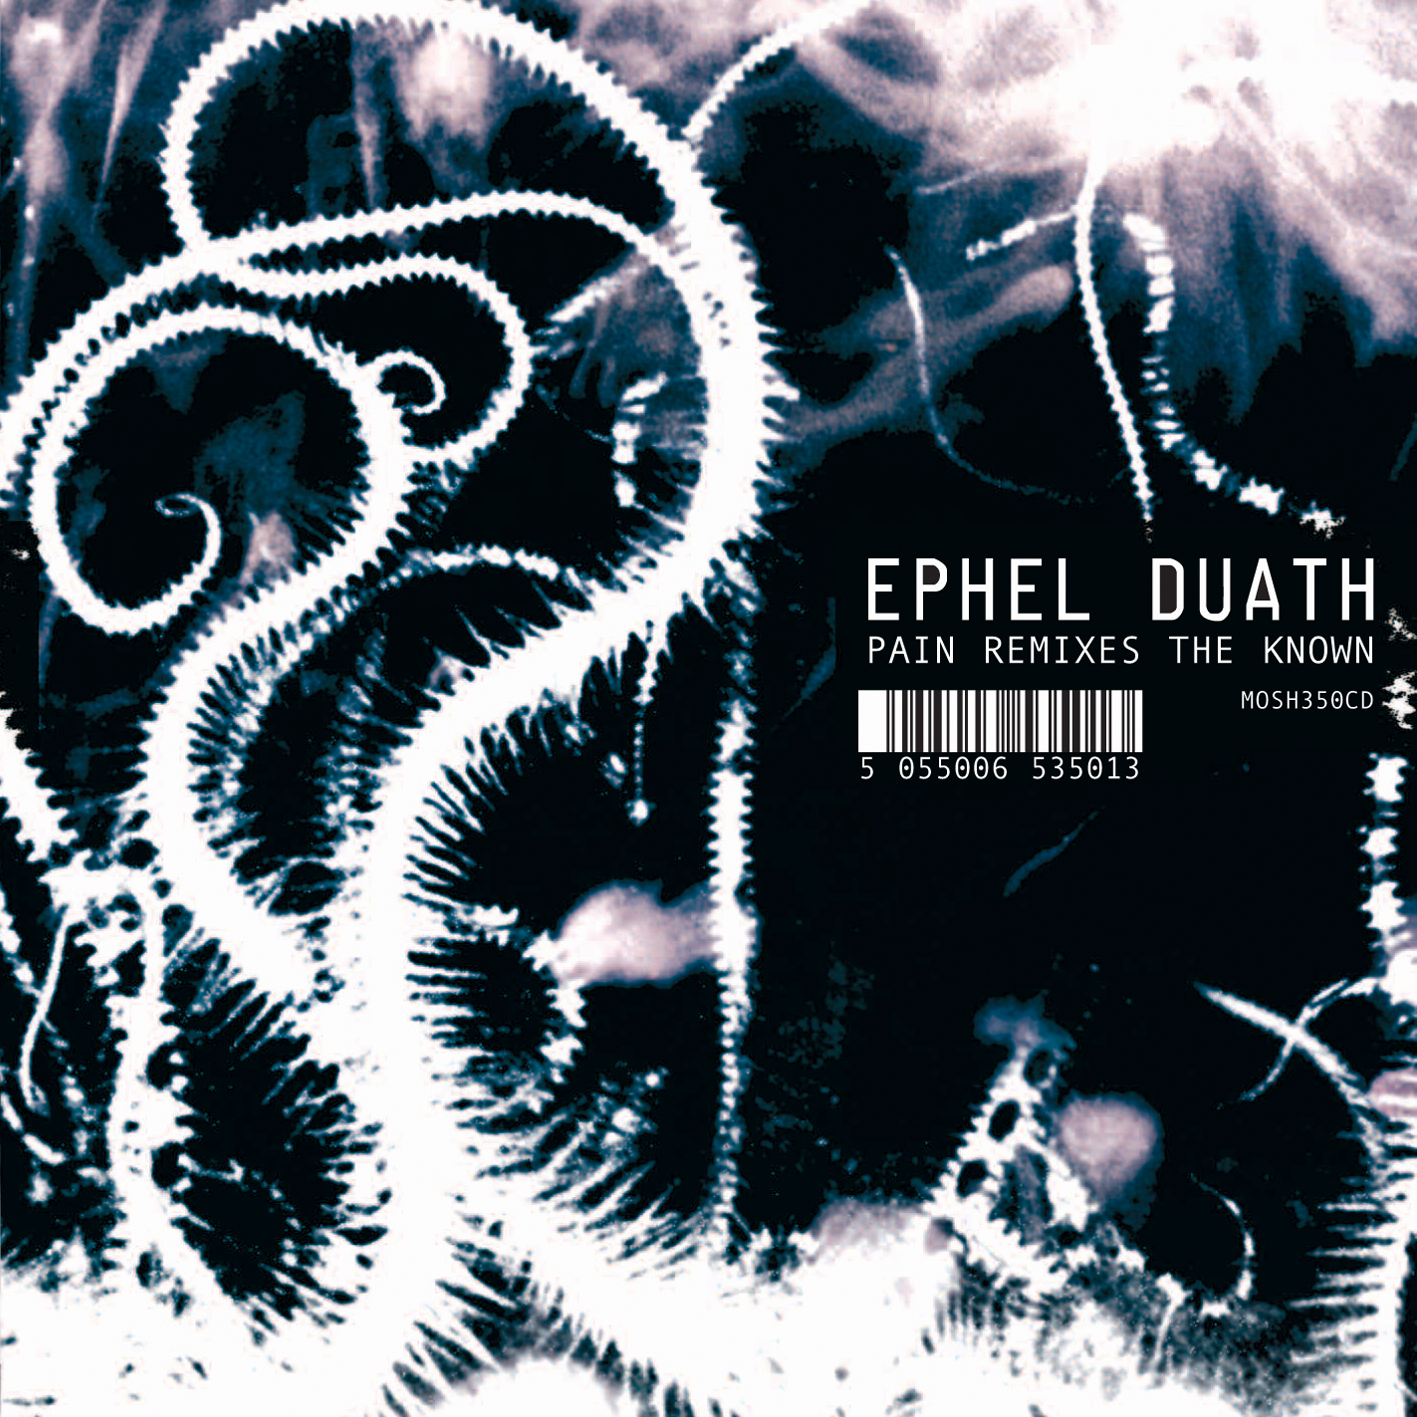 Ephel Duath - Pain Remixes the Known CD Review